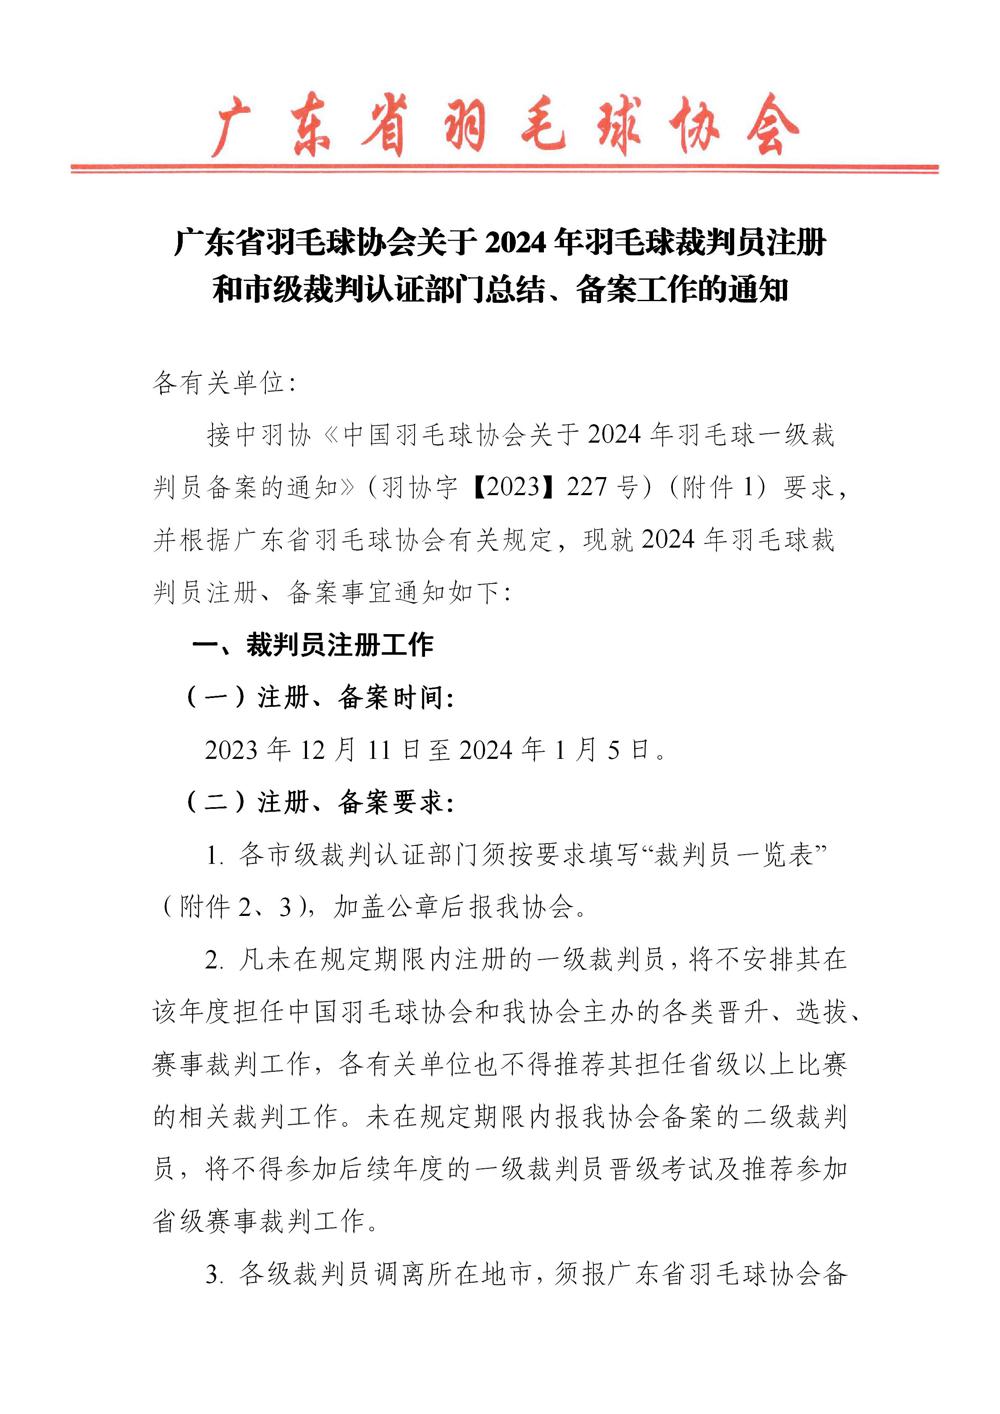 0-广东省羽毛球协会关于2024年羽毛球裁判员注册和各级裁判认证部门总结、备案工作的通知_01